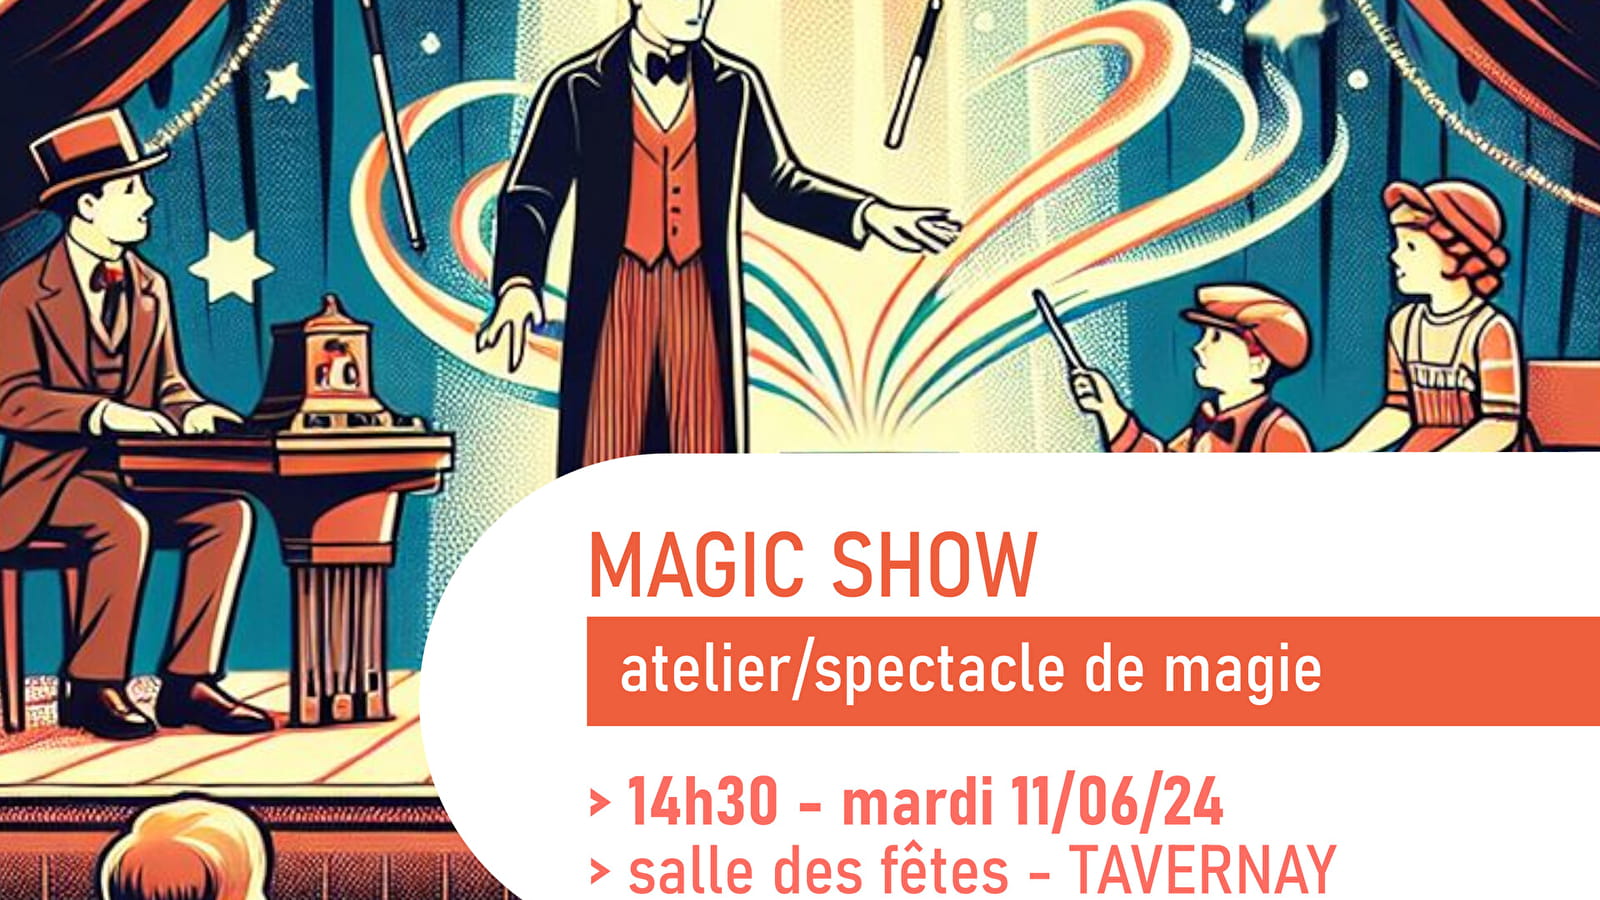 Magische show